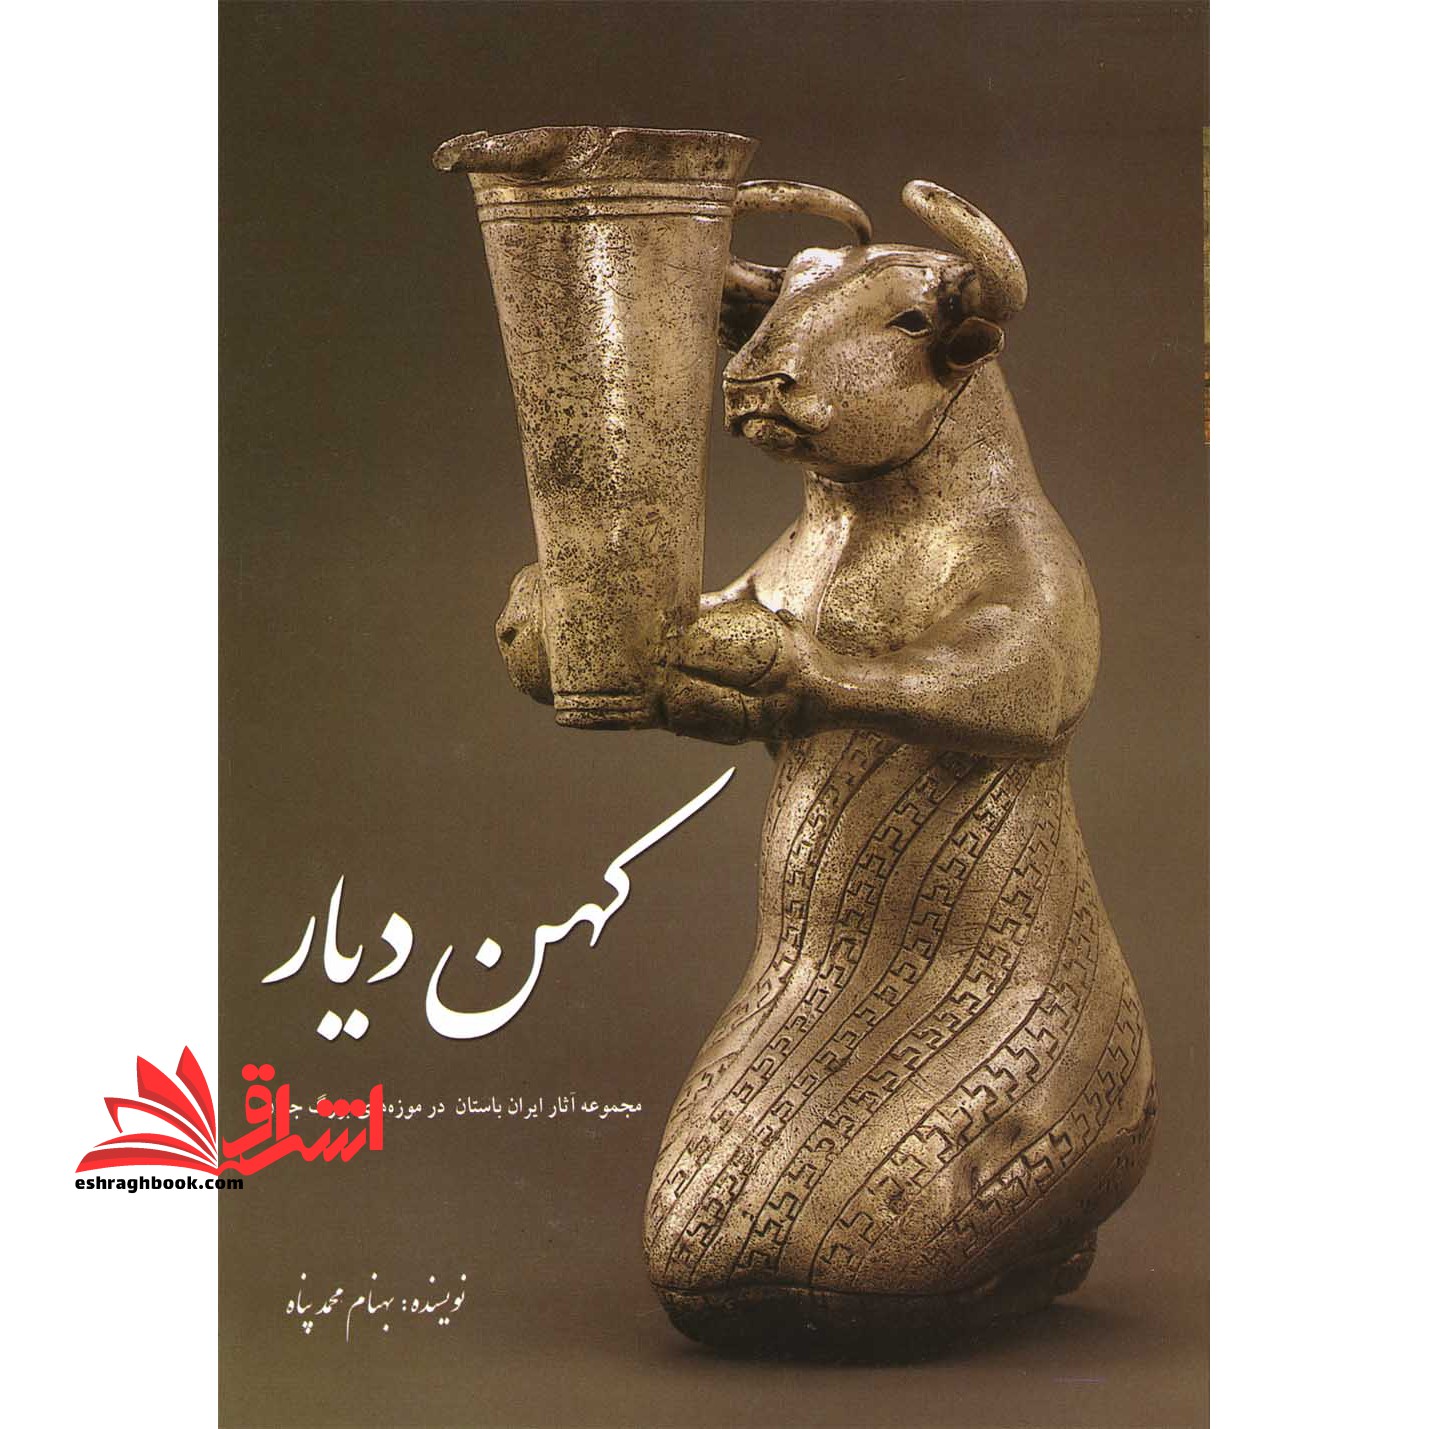 کهن دیار (جلد اول) مجموعه آثار ایران باستان در موزه های بزرگ جهان